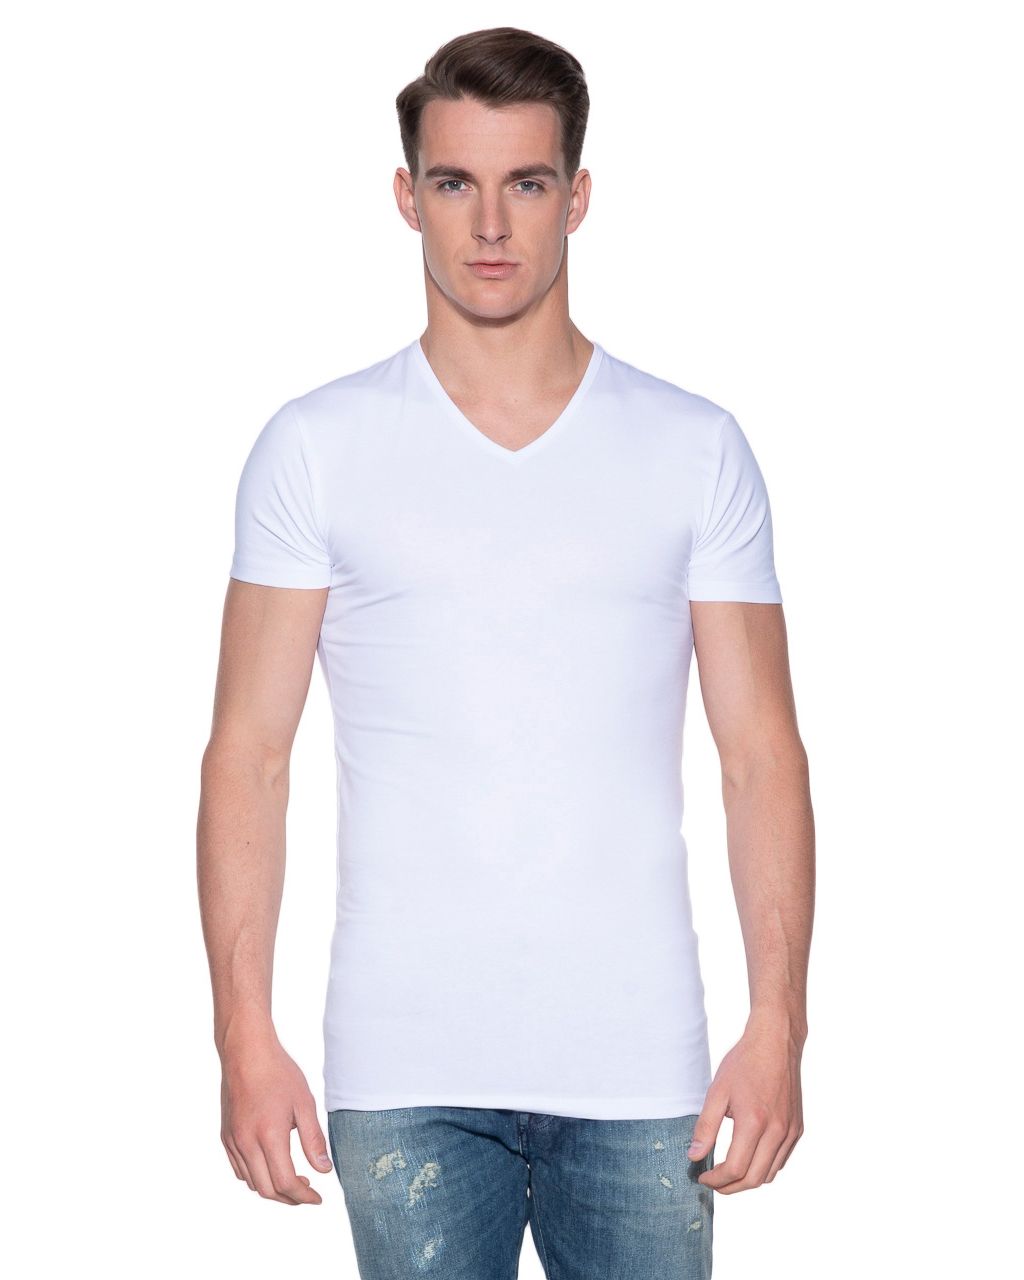 Gymnastiek Tablet Meerdere Slater Stretch T-shirt V-hals 2-pack | Shop nu - Only for Men